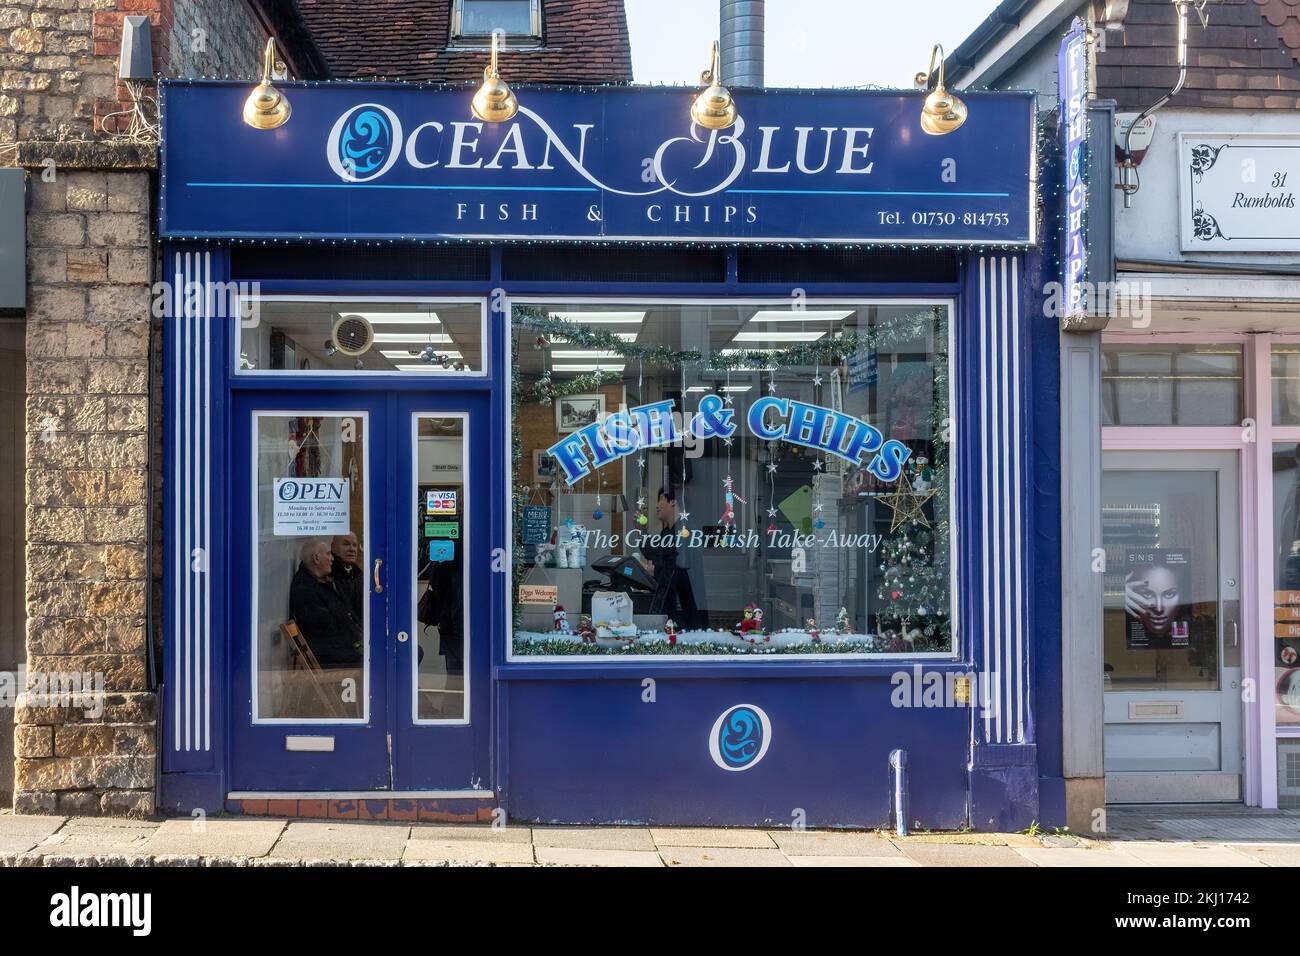 Restaurant traditionnel à emporter Fish and Chips appelé Ocean Blue dans le centre-ville de Midhurst, West Sussex, Angleterre, Royaume-Uni, avec des clients à l'intérieur Banque D'Images